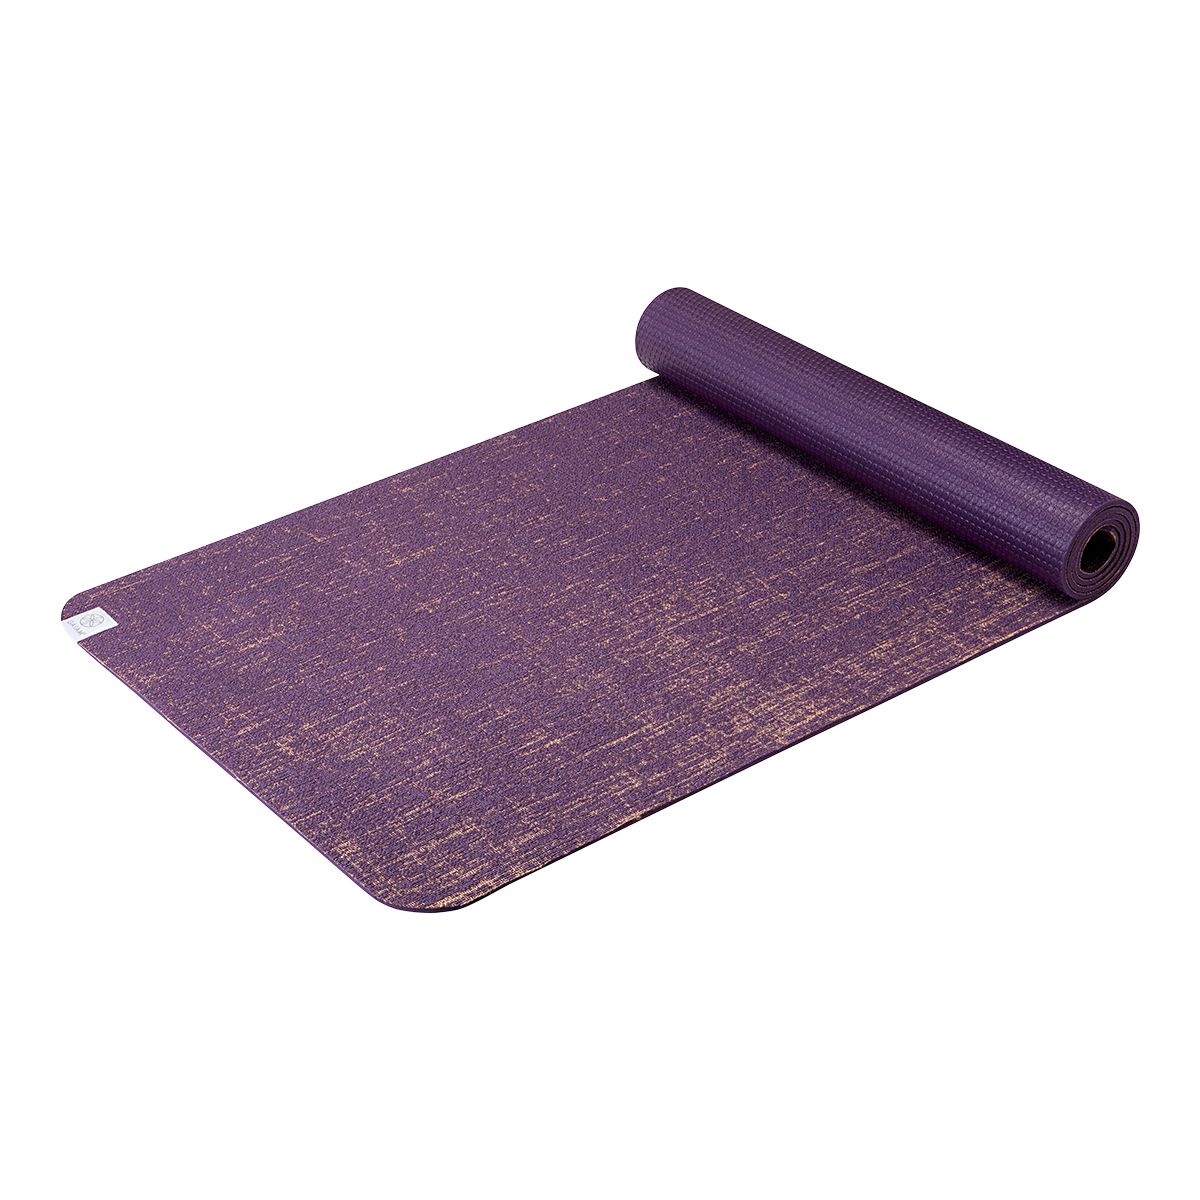 Gaiam Studio 6mm Select Yoga Mat